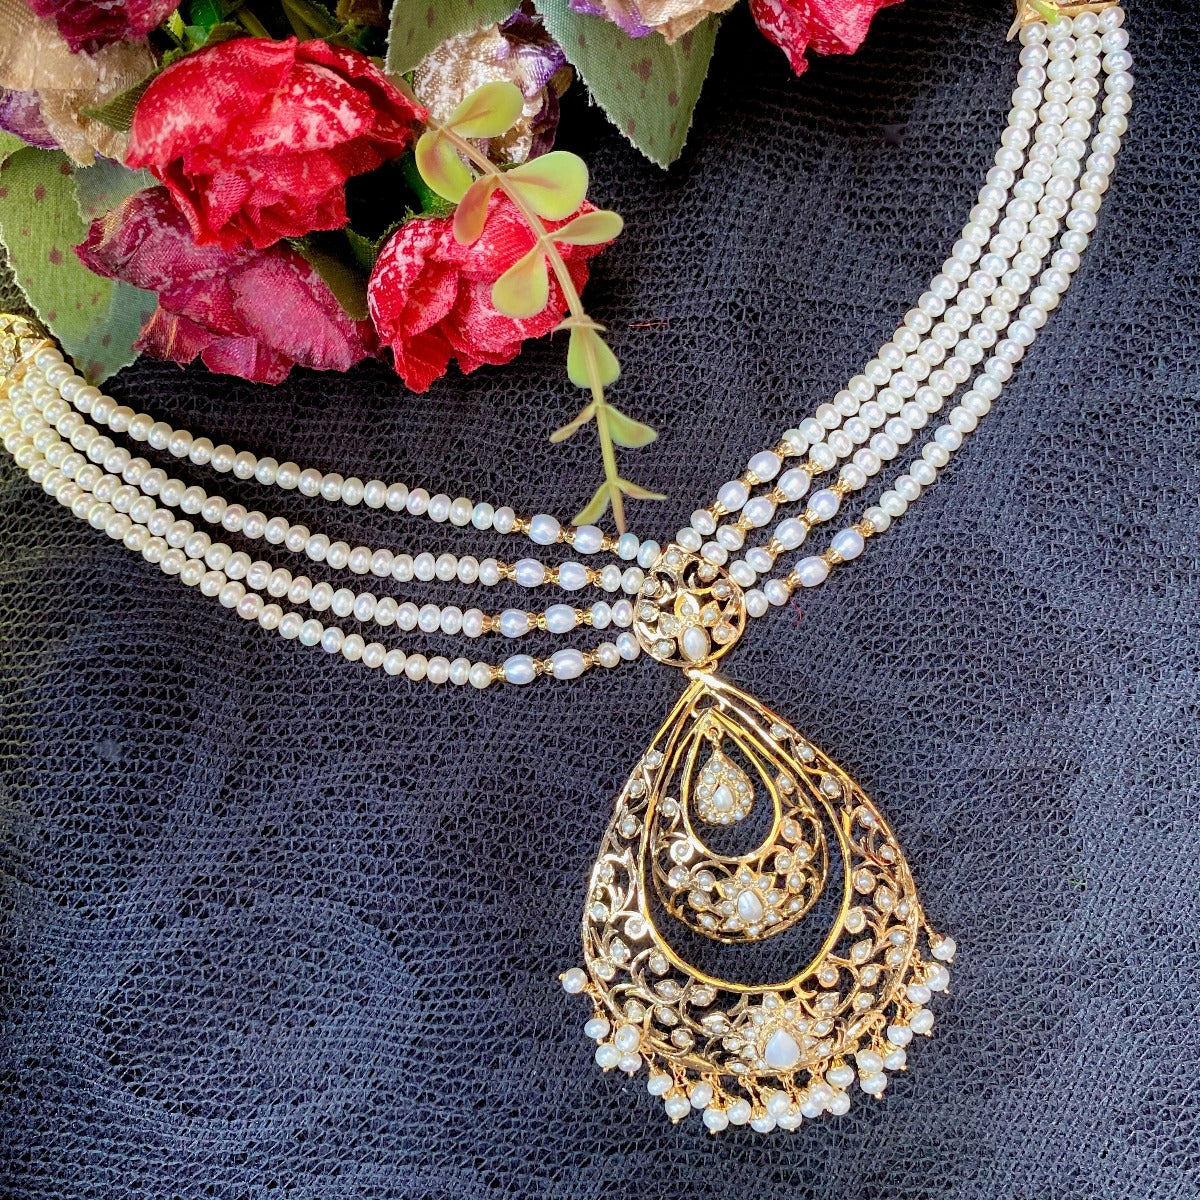 jadau pendant with mala